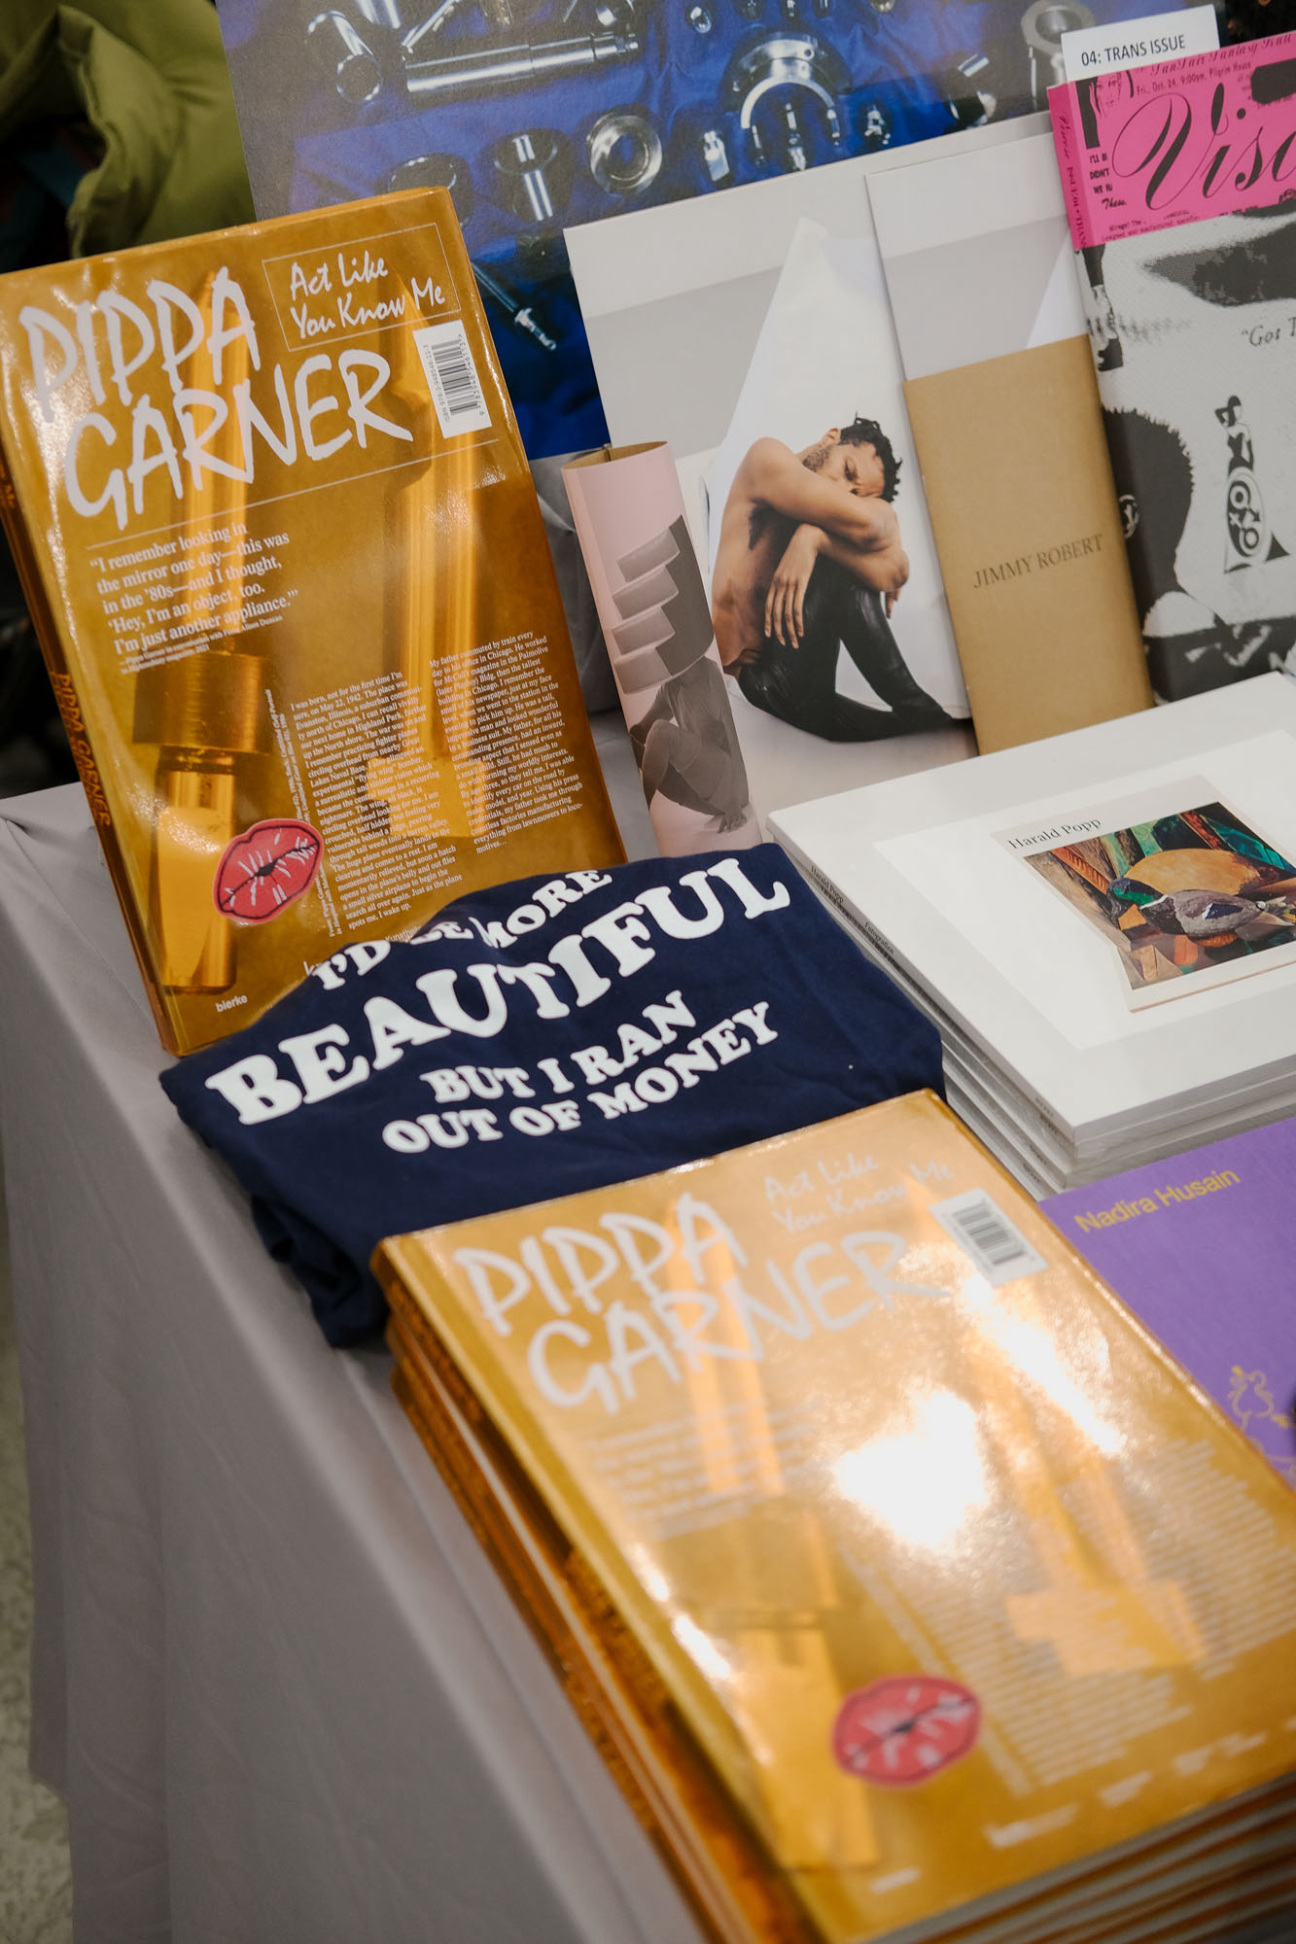 printed-matter-ny-art-book-fair